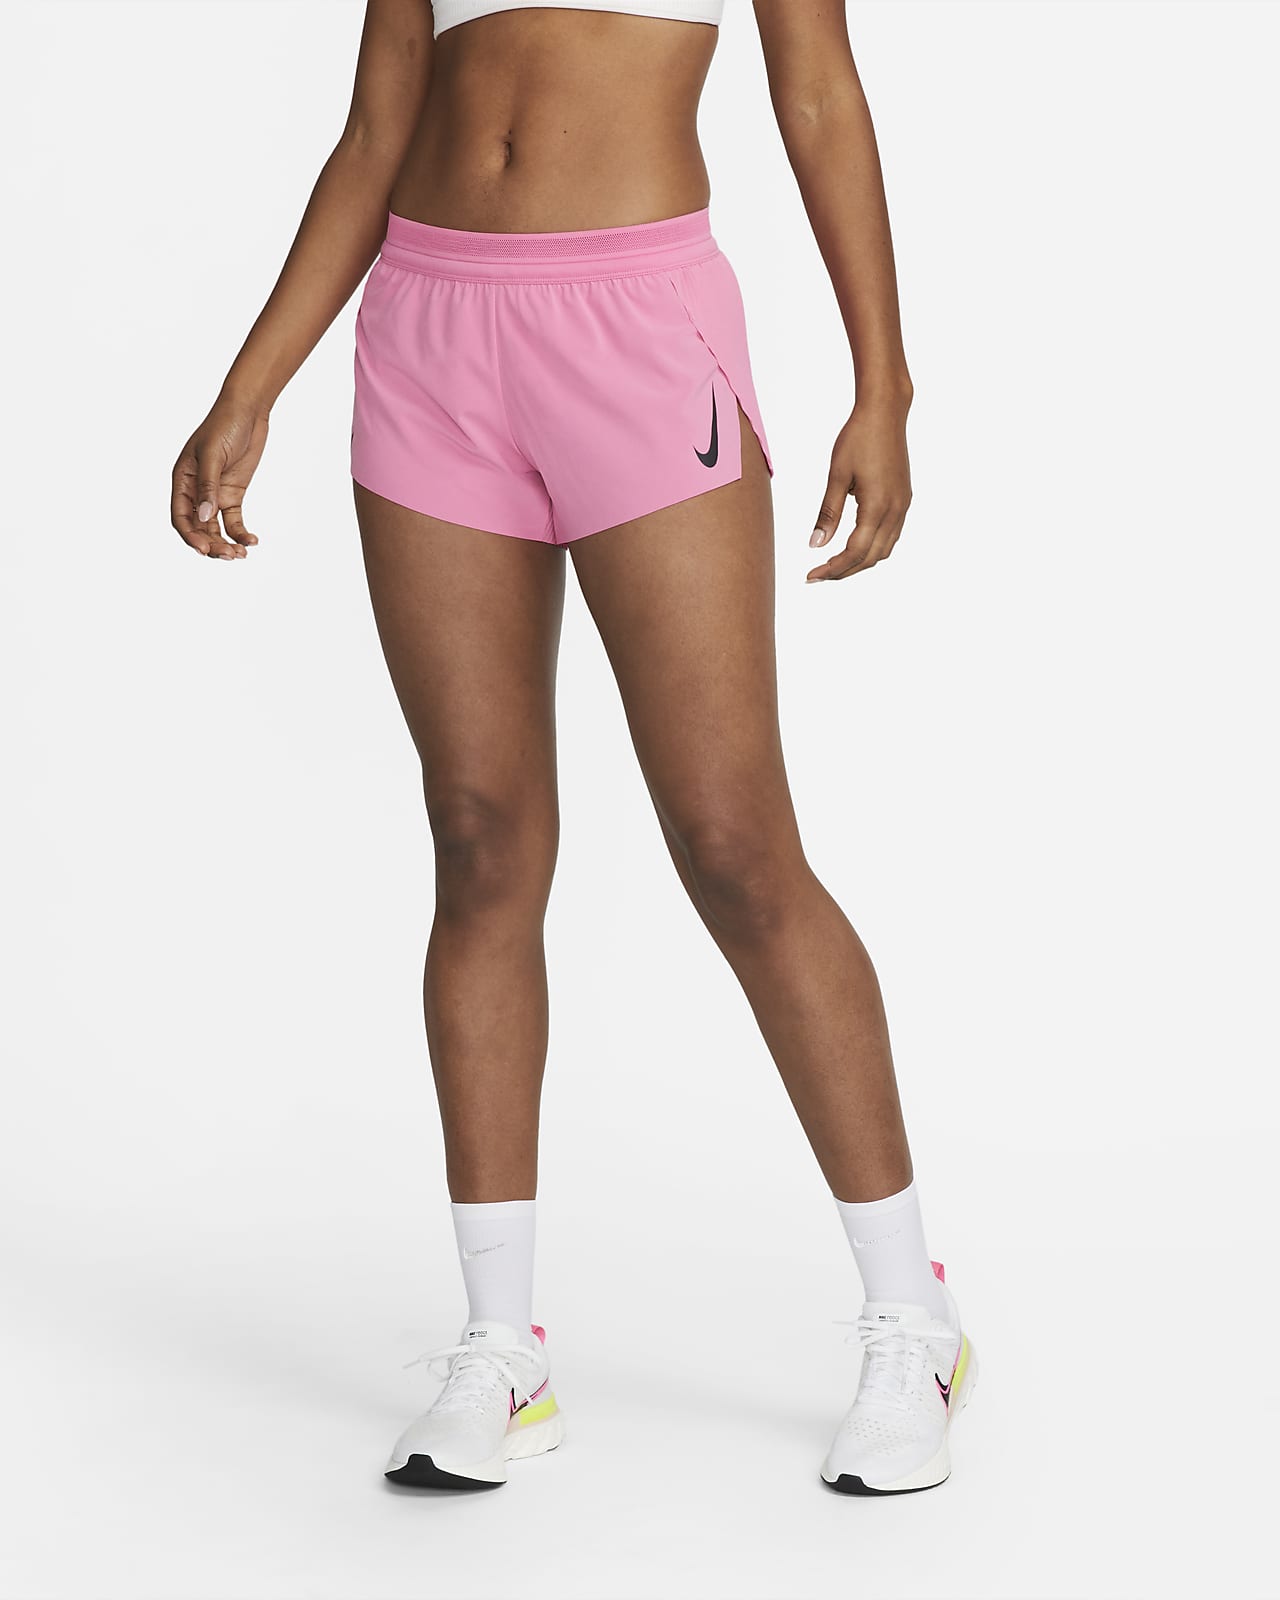 Shorts Deporte Mujer - Los Mejores Pantalones Deportivos